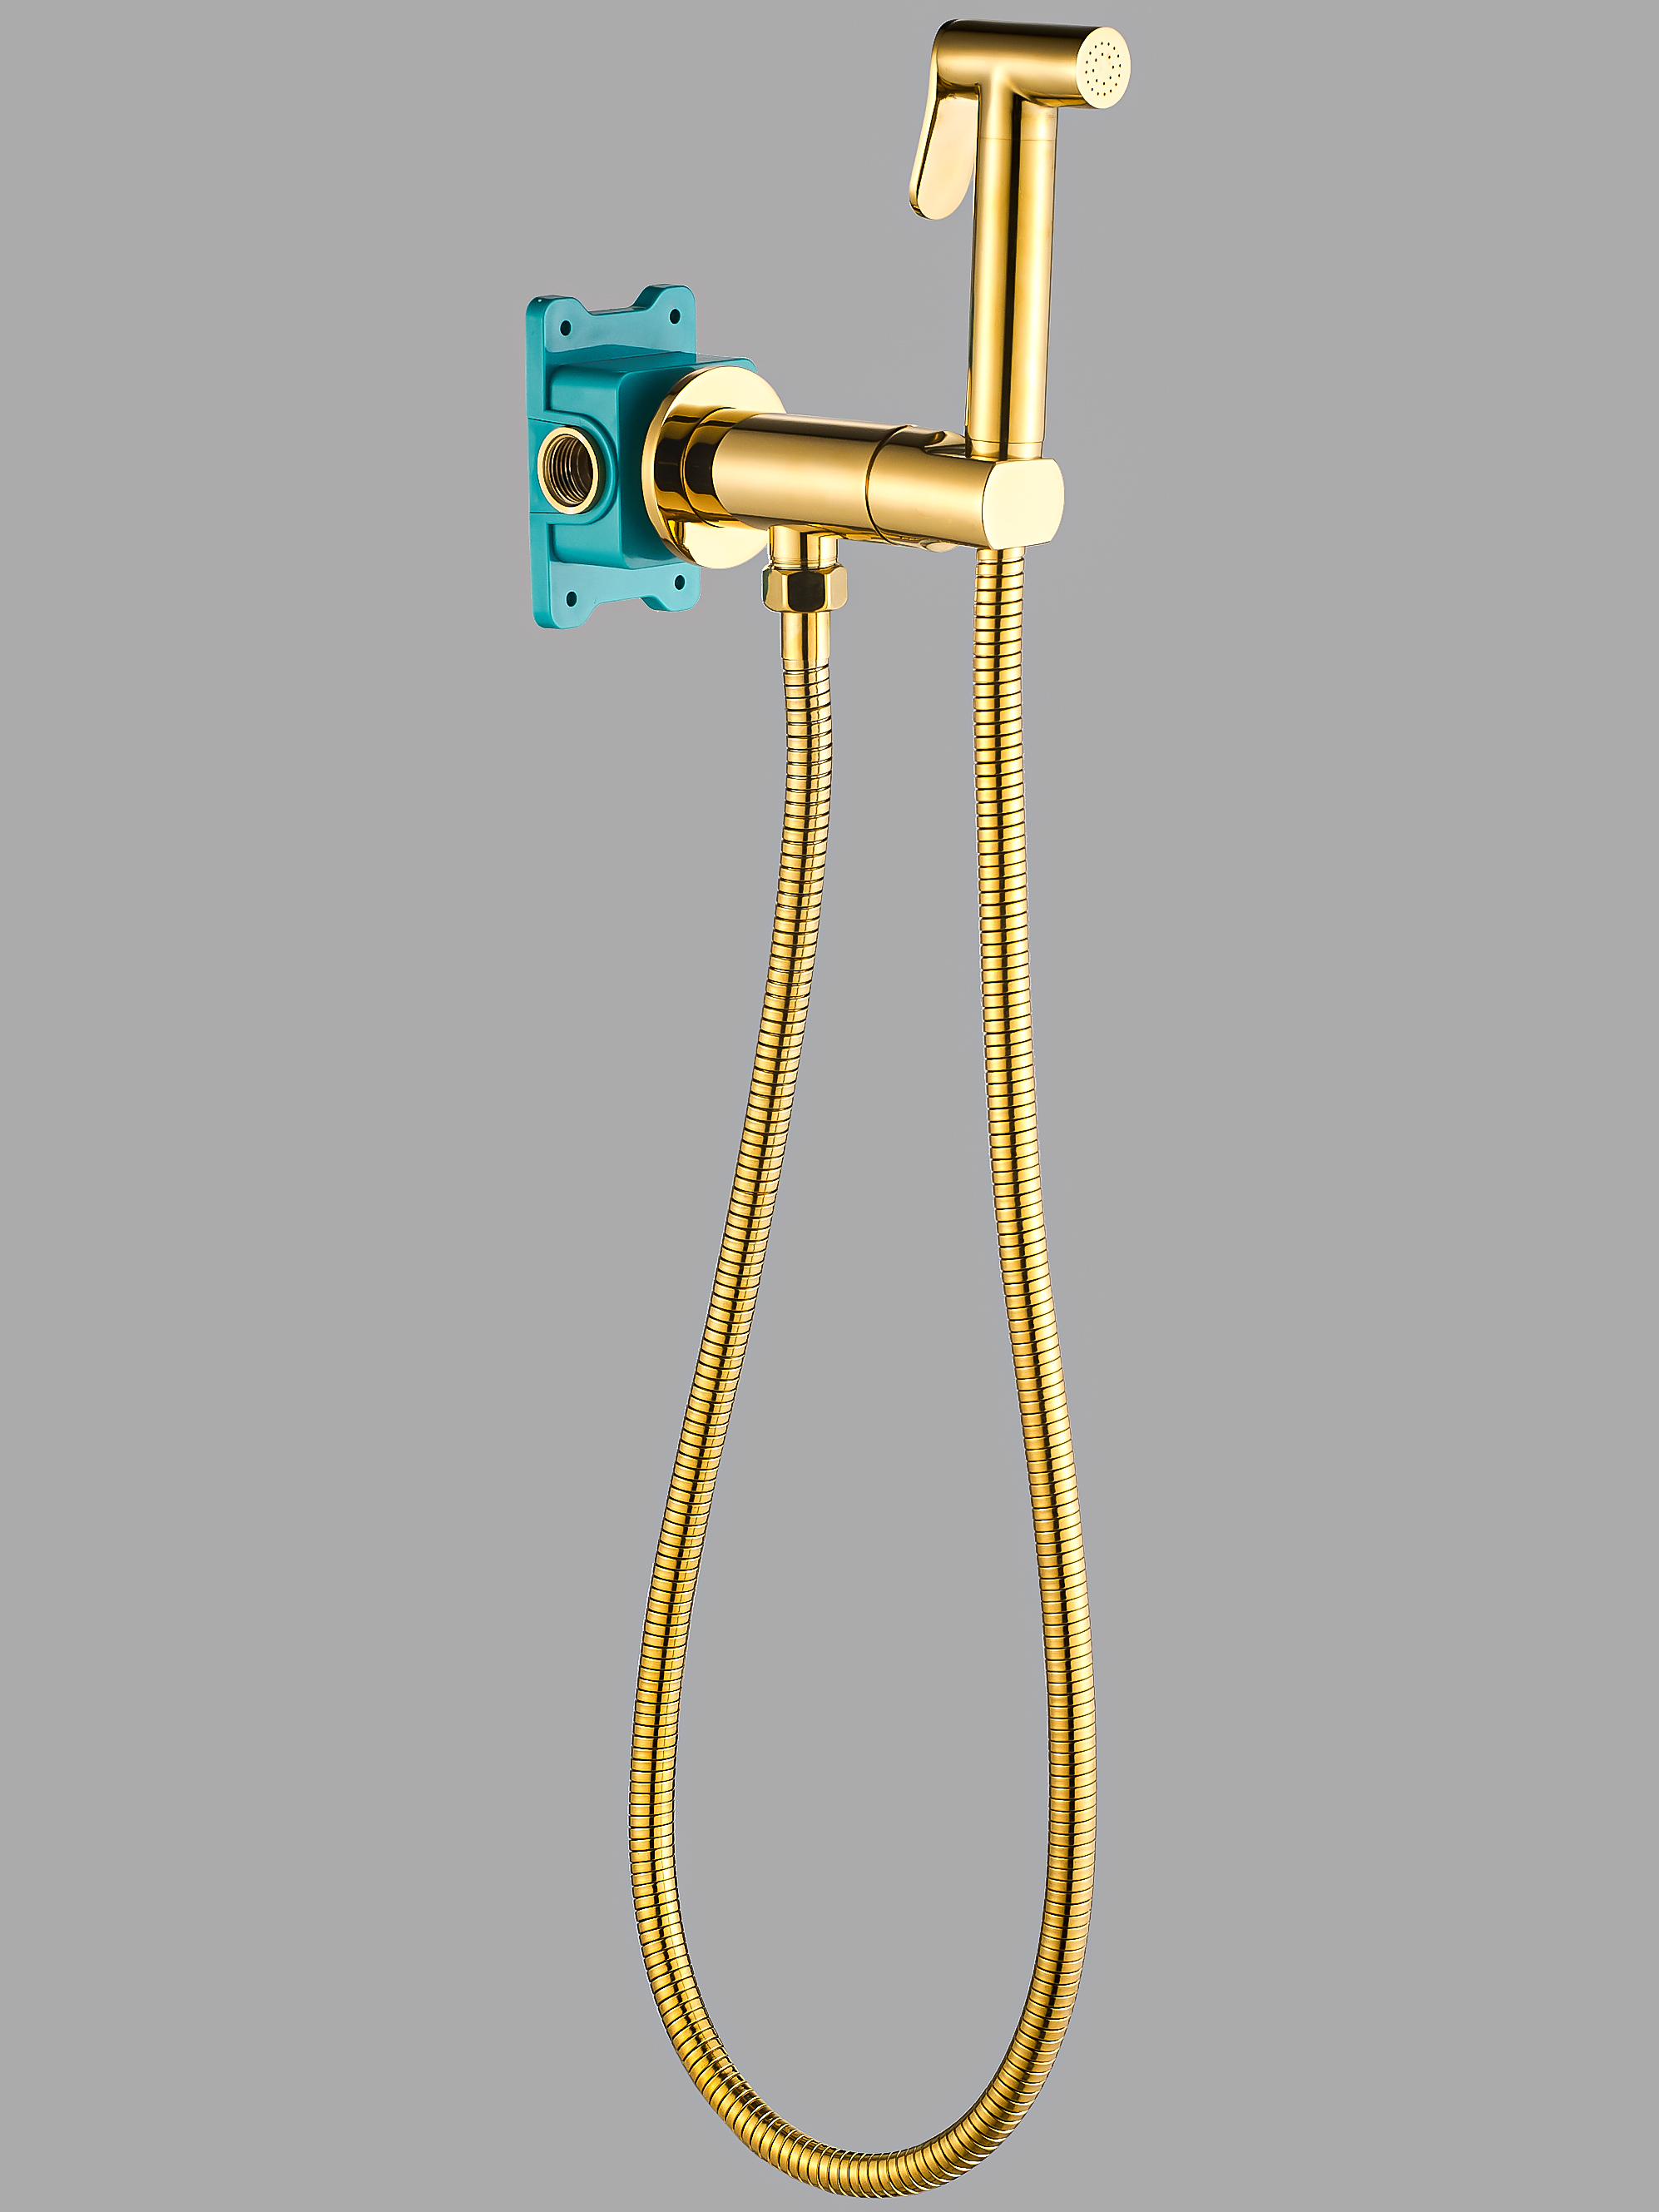 Гигиенический душ с прогрессивным смесителем ALMAes AGATA AL-877-08 С ВНУТРЕННЕЙ ЧАСТЬЮ, золото